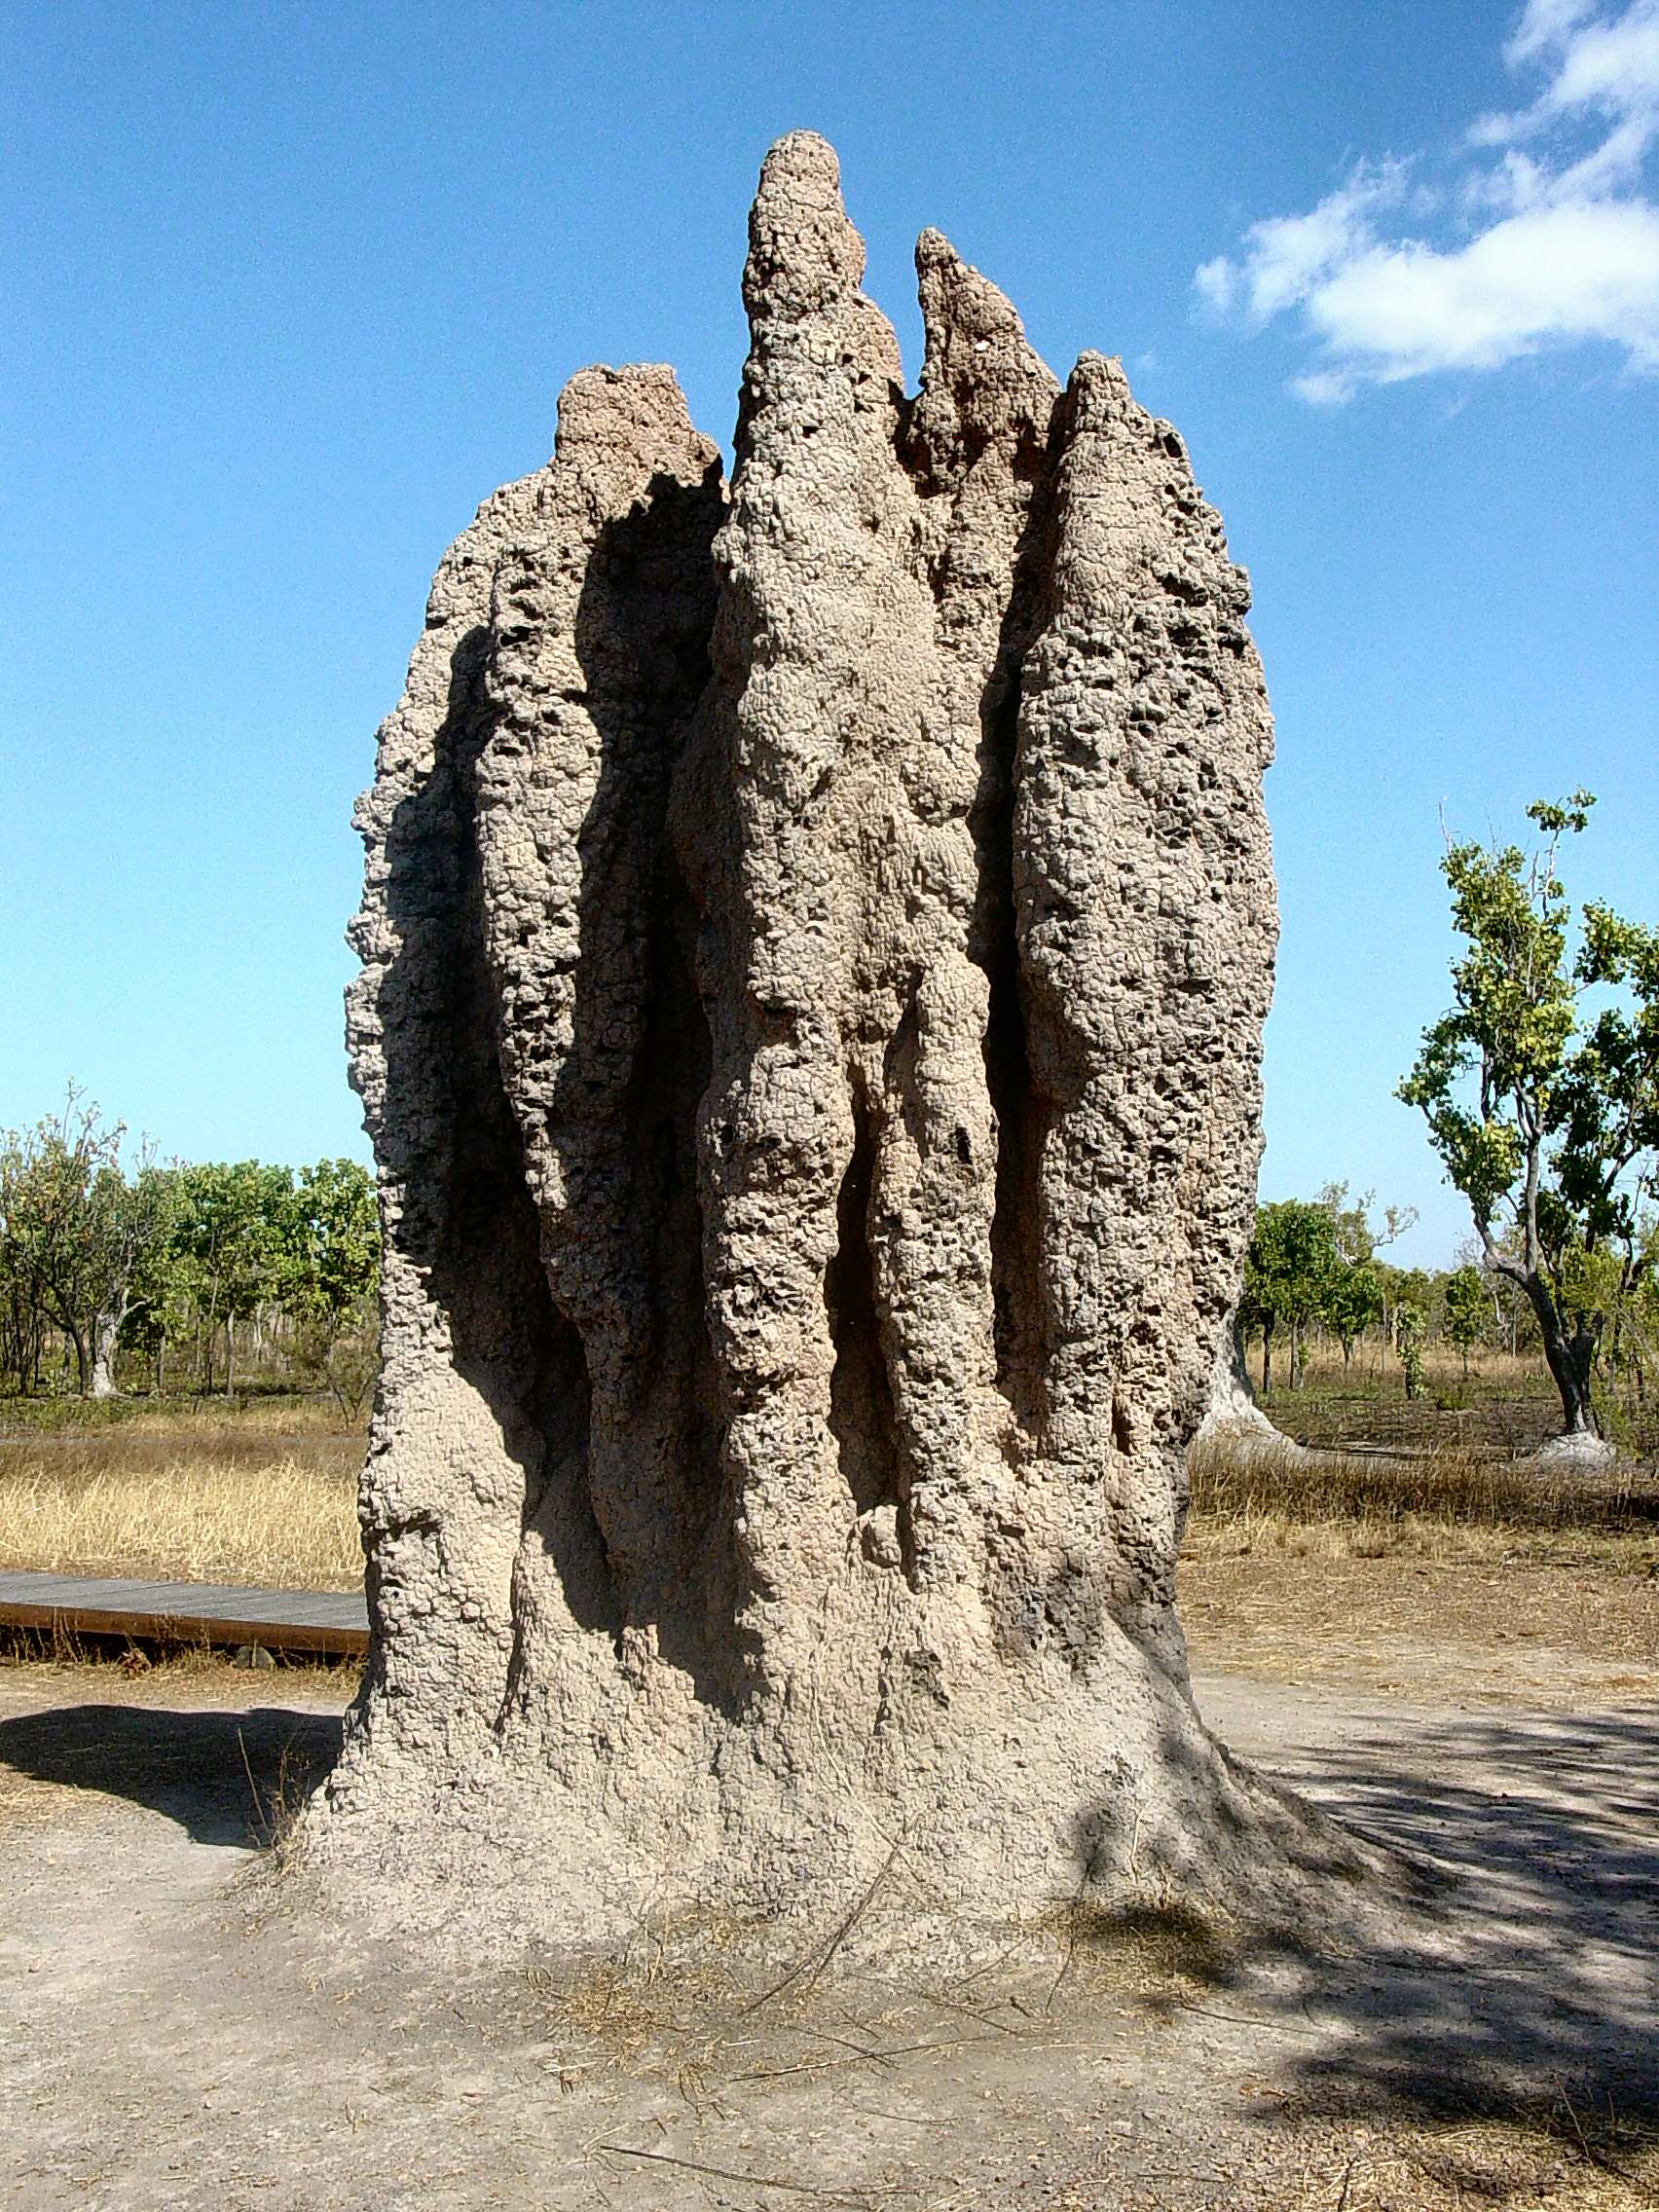 A termite mound